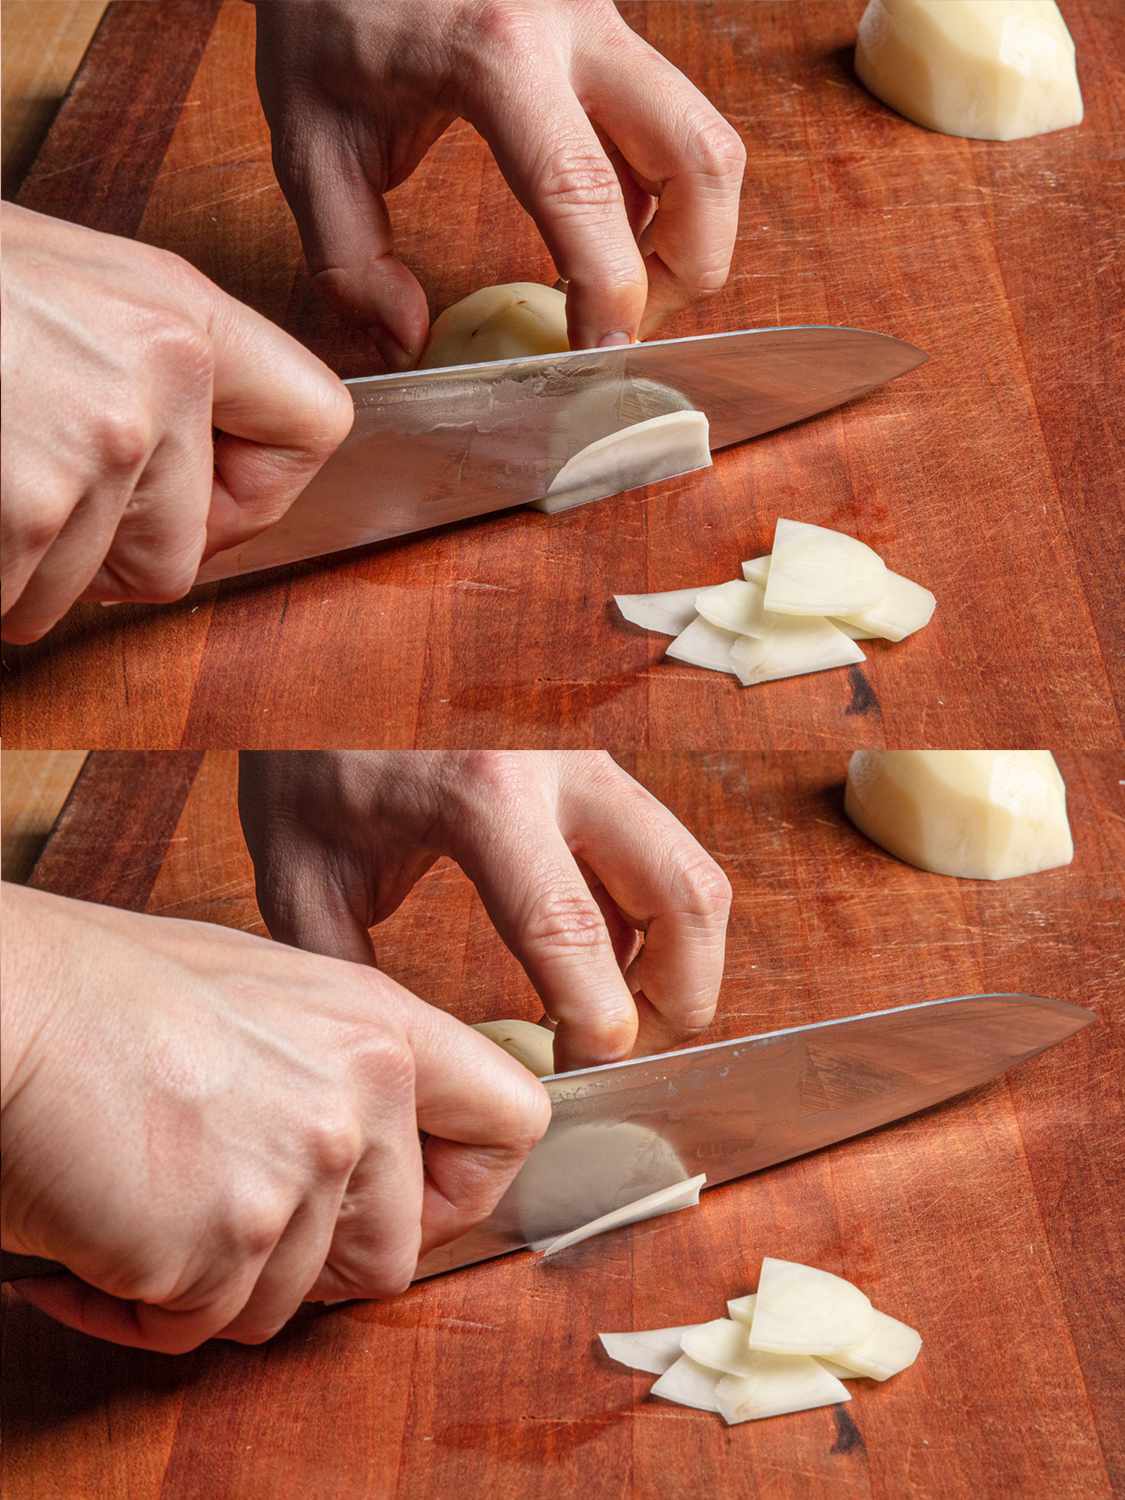 两幅拼贴图显示了推切土豆的步骤，刀向前滑动，切成薄片